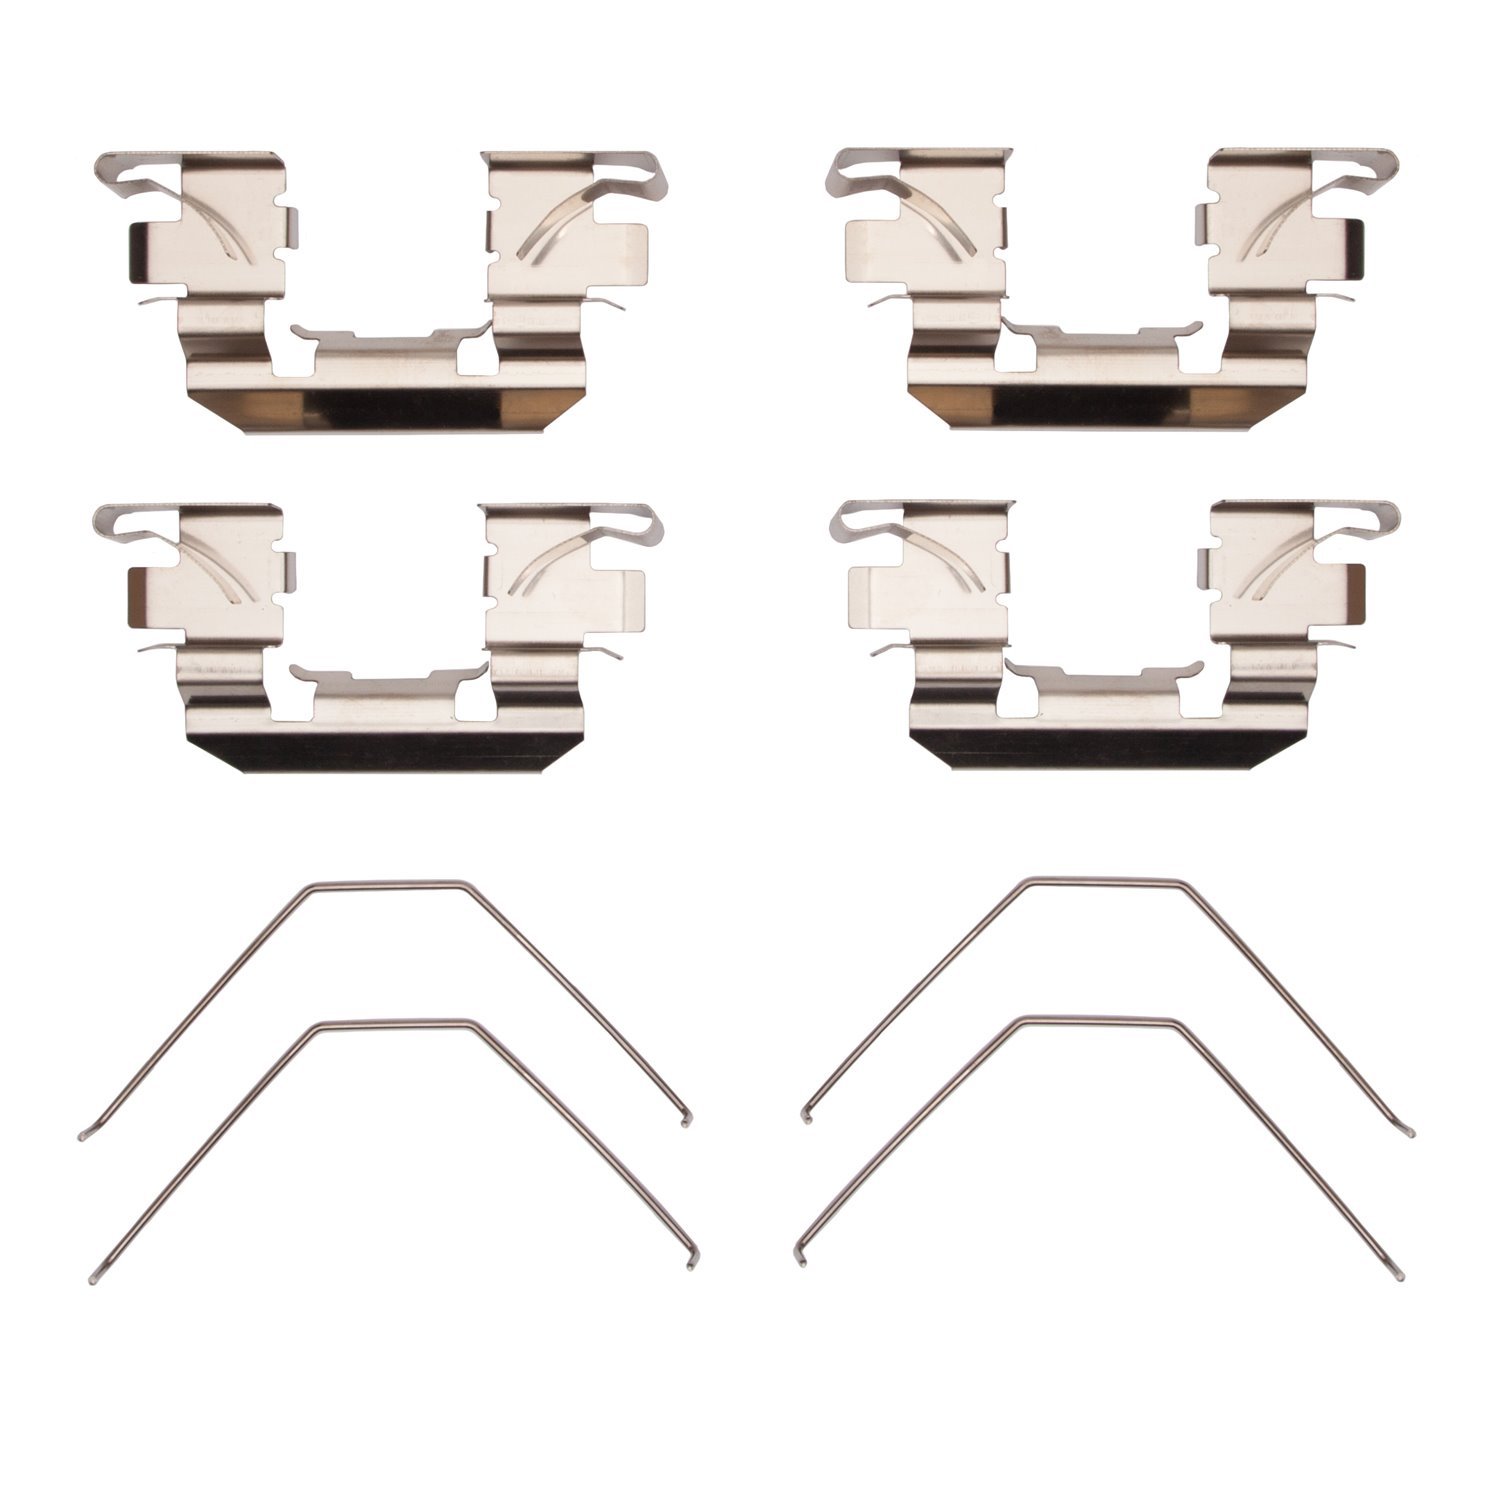 Disc Brake Hardware Kit, Fits Select Fits Multiple Makes/Models, Position: Front